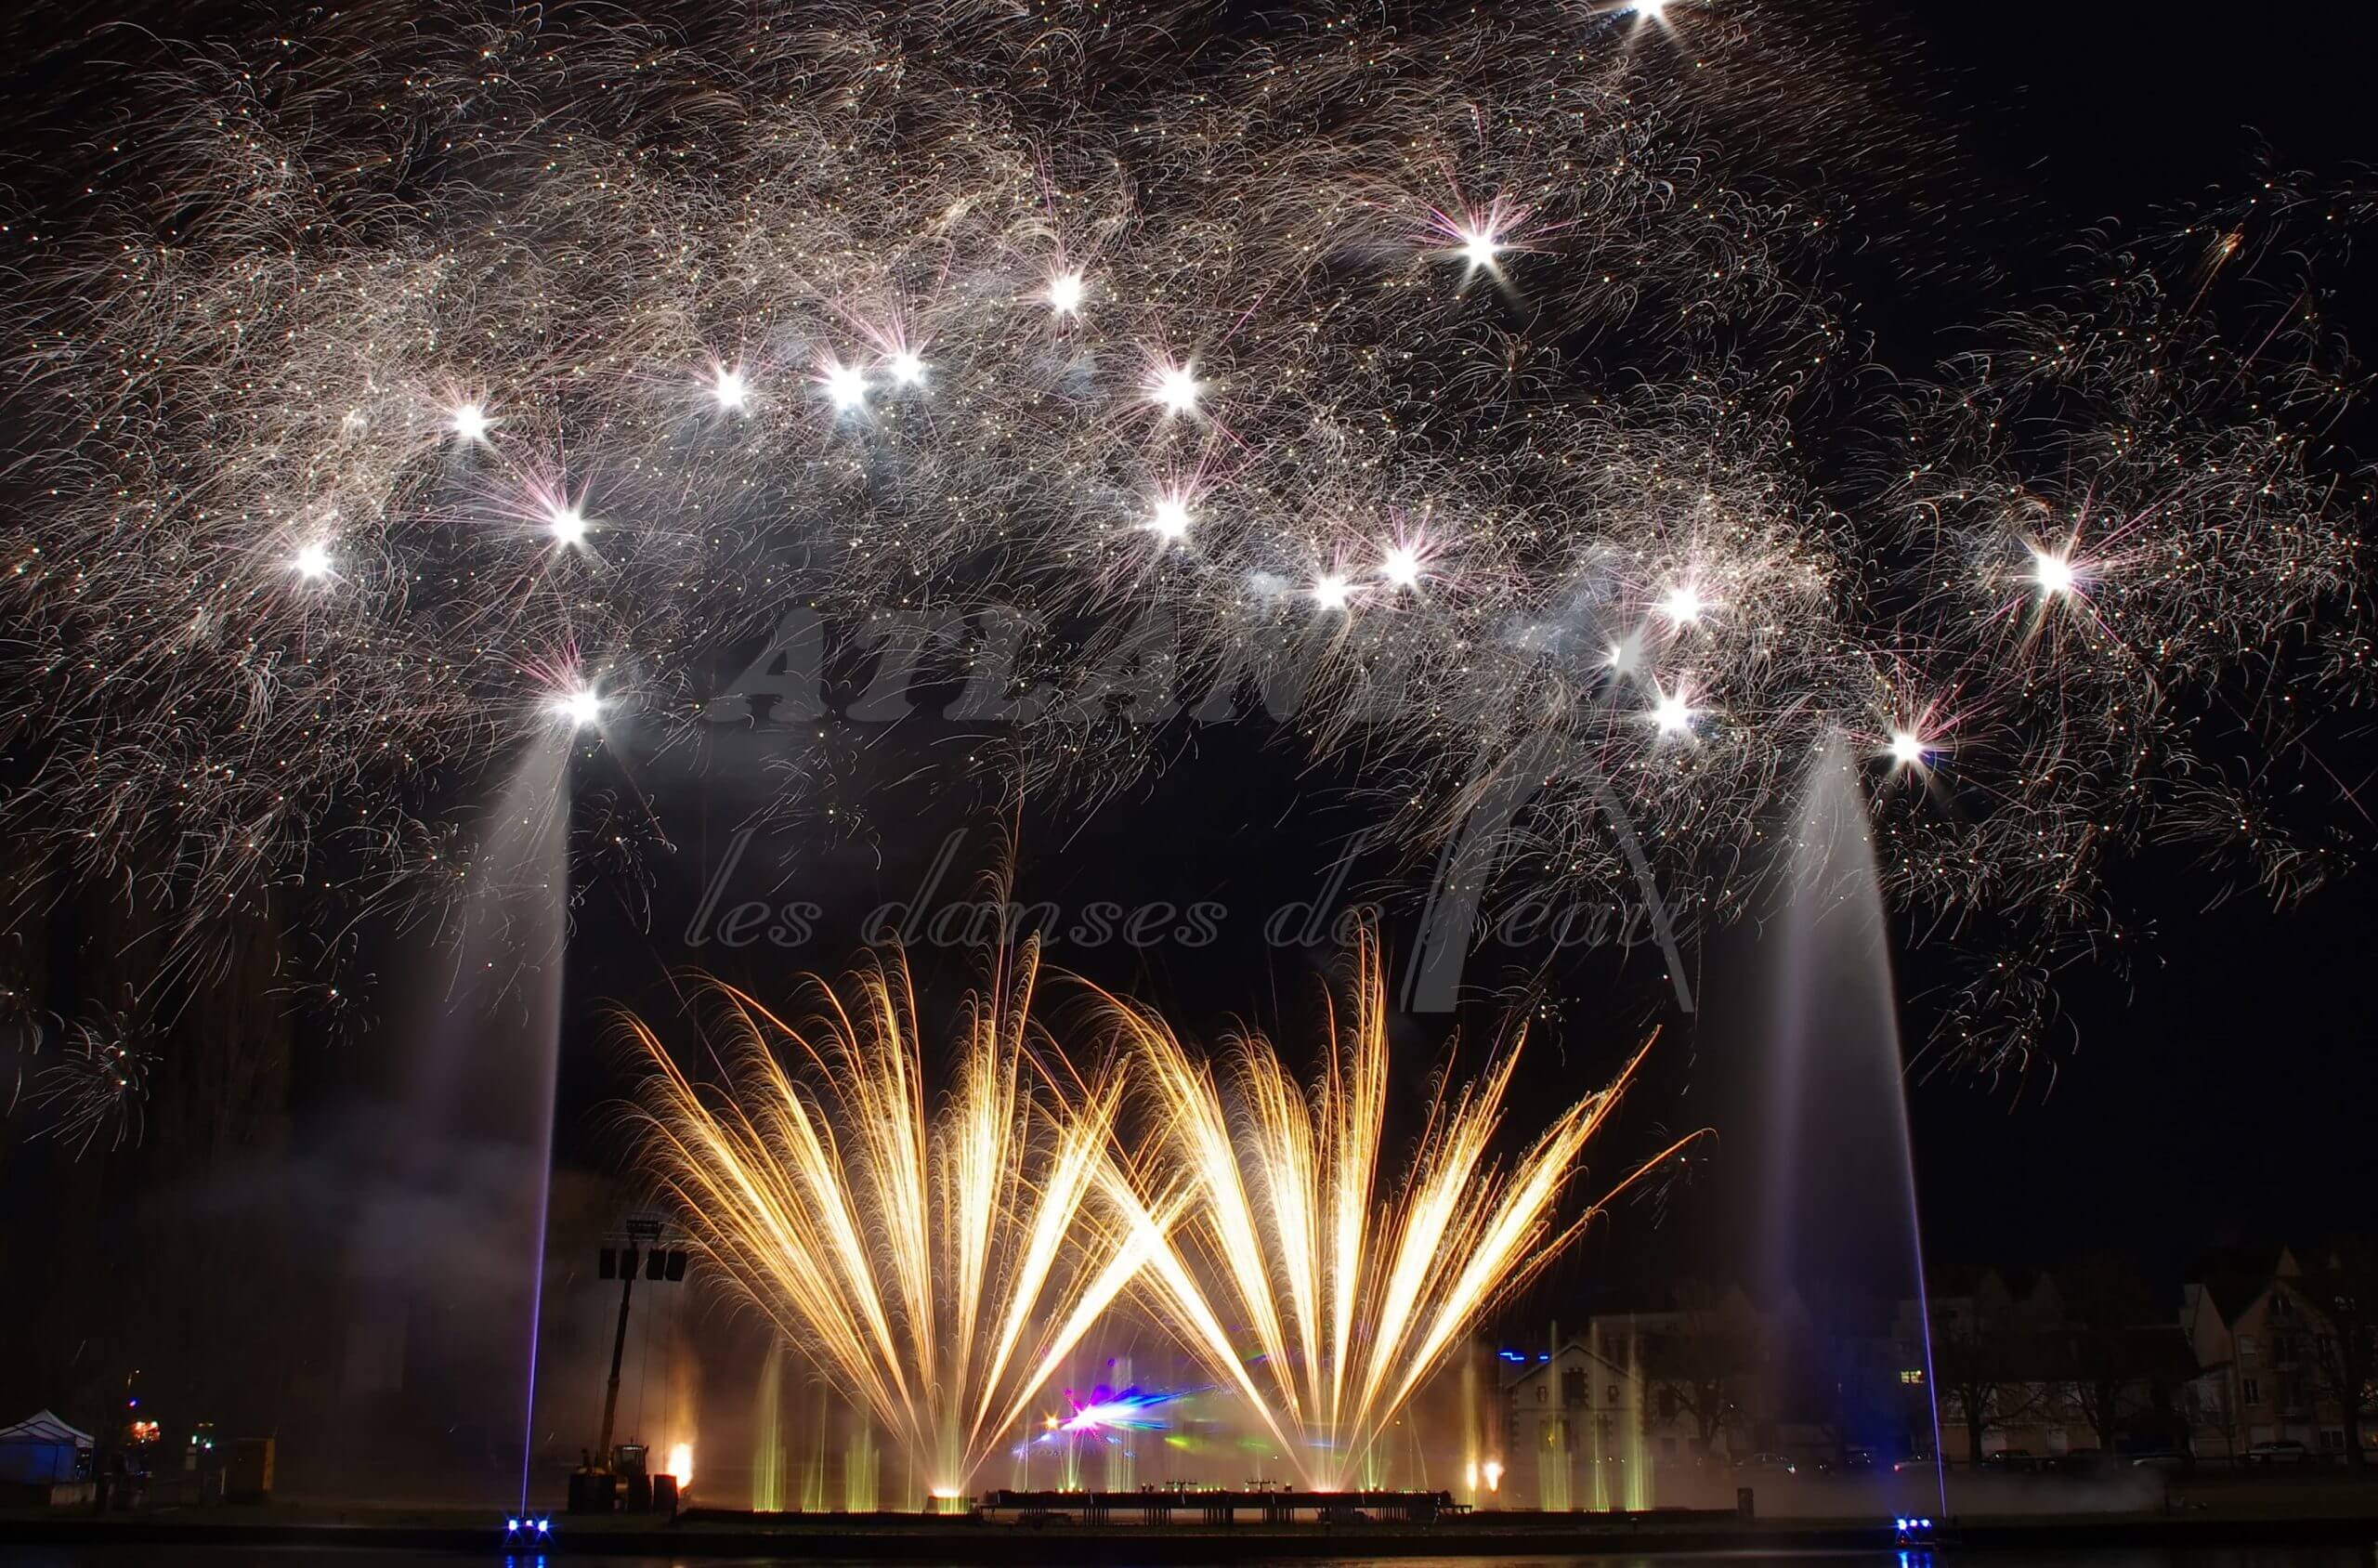 Atlantid - Spectacle de fontaines avec feu d'artifice devant à Auxerre